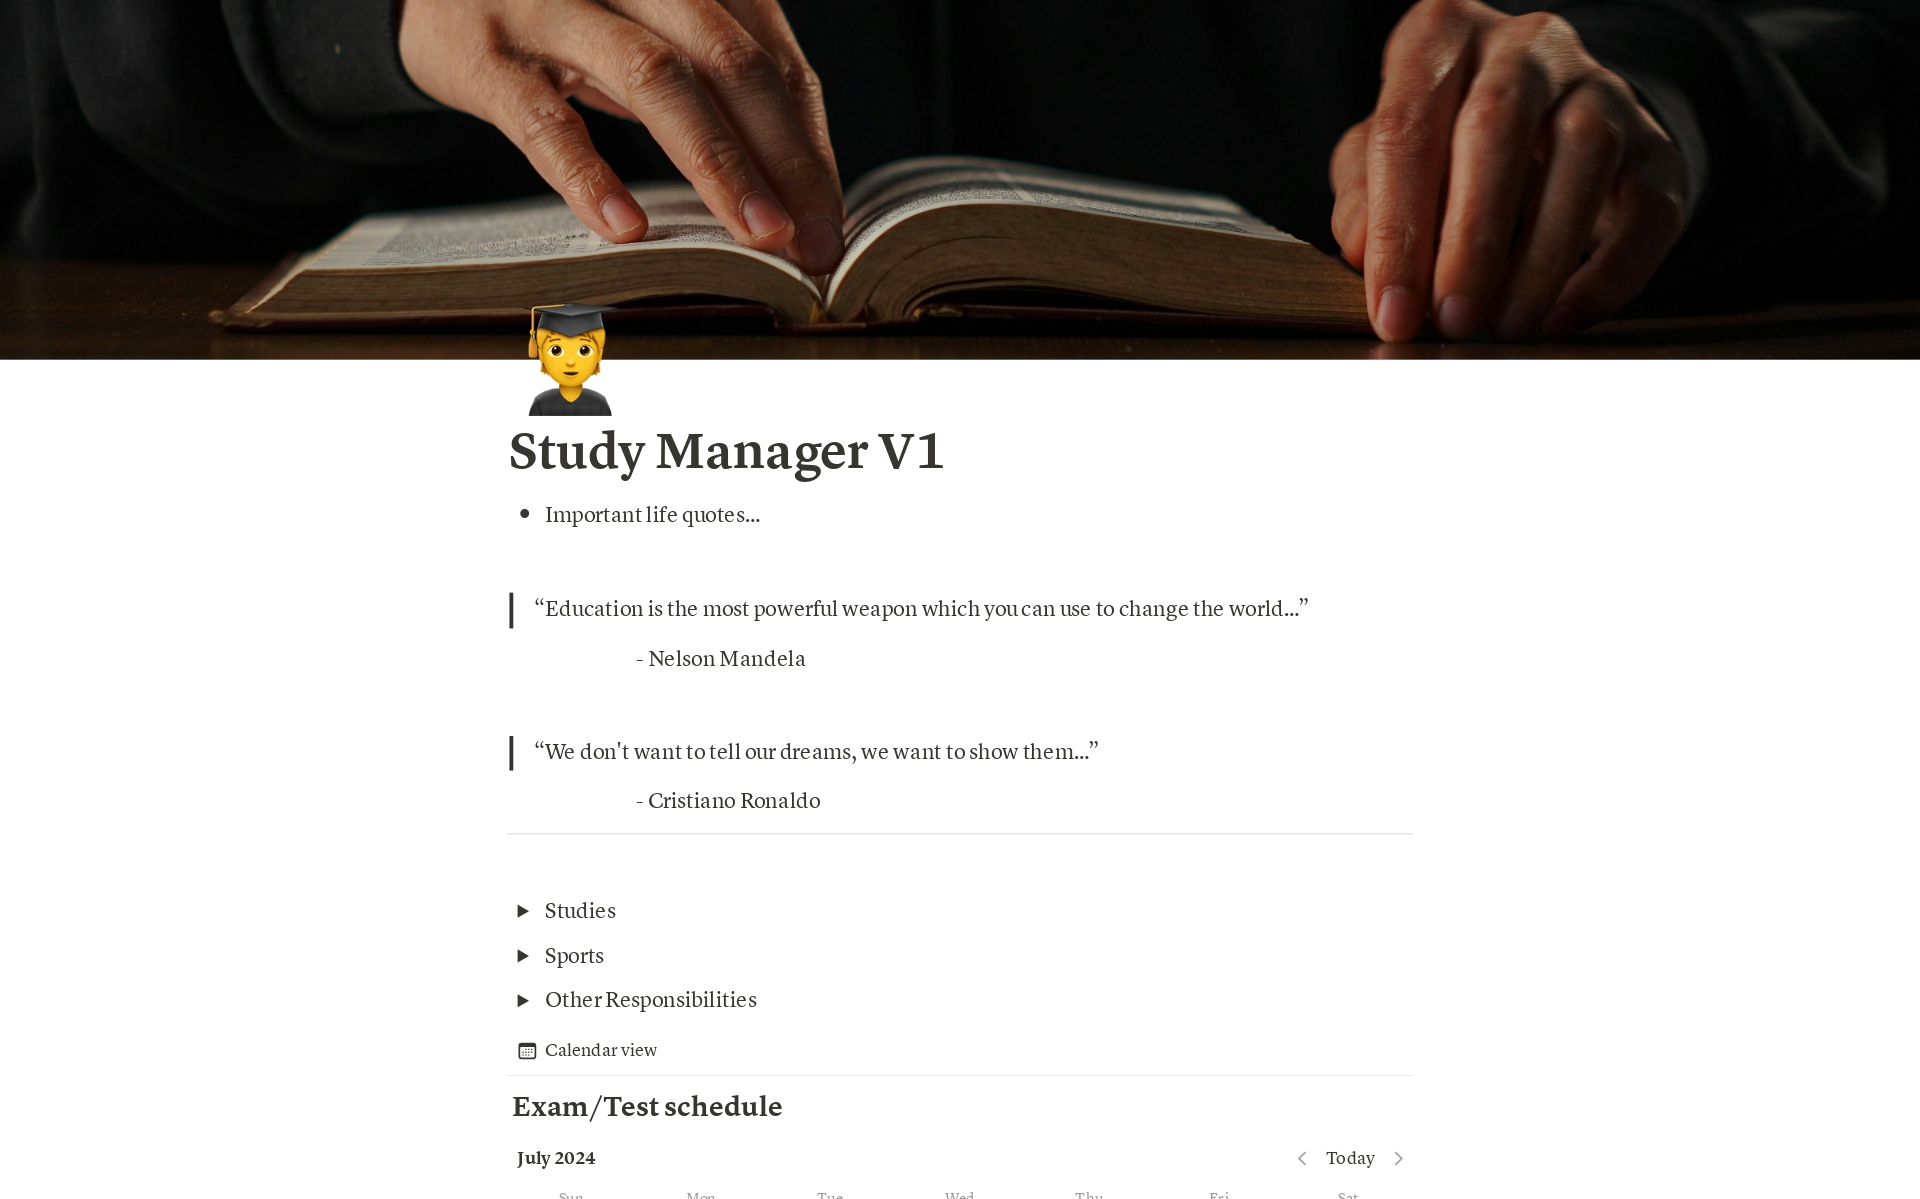 Uma prévia do modelo para Study Manager V1 